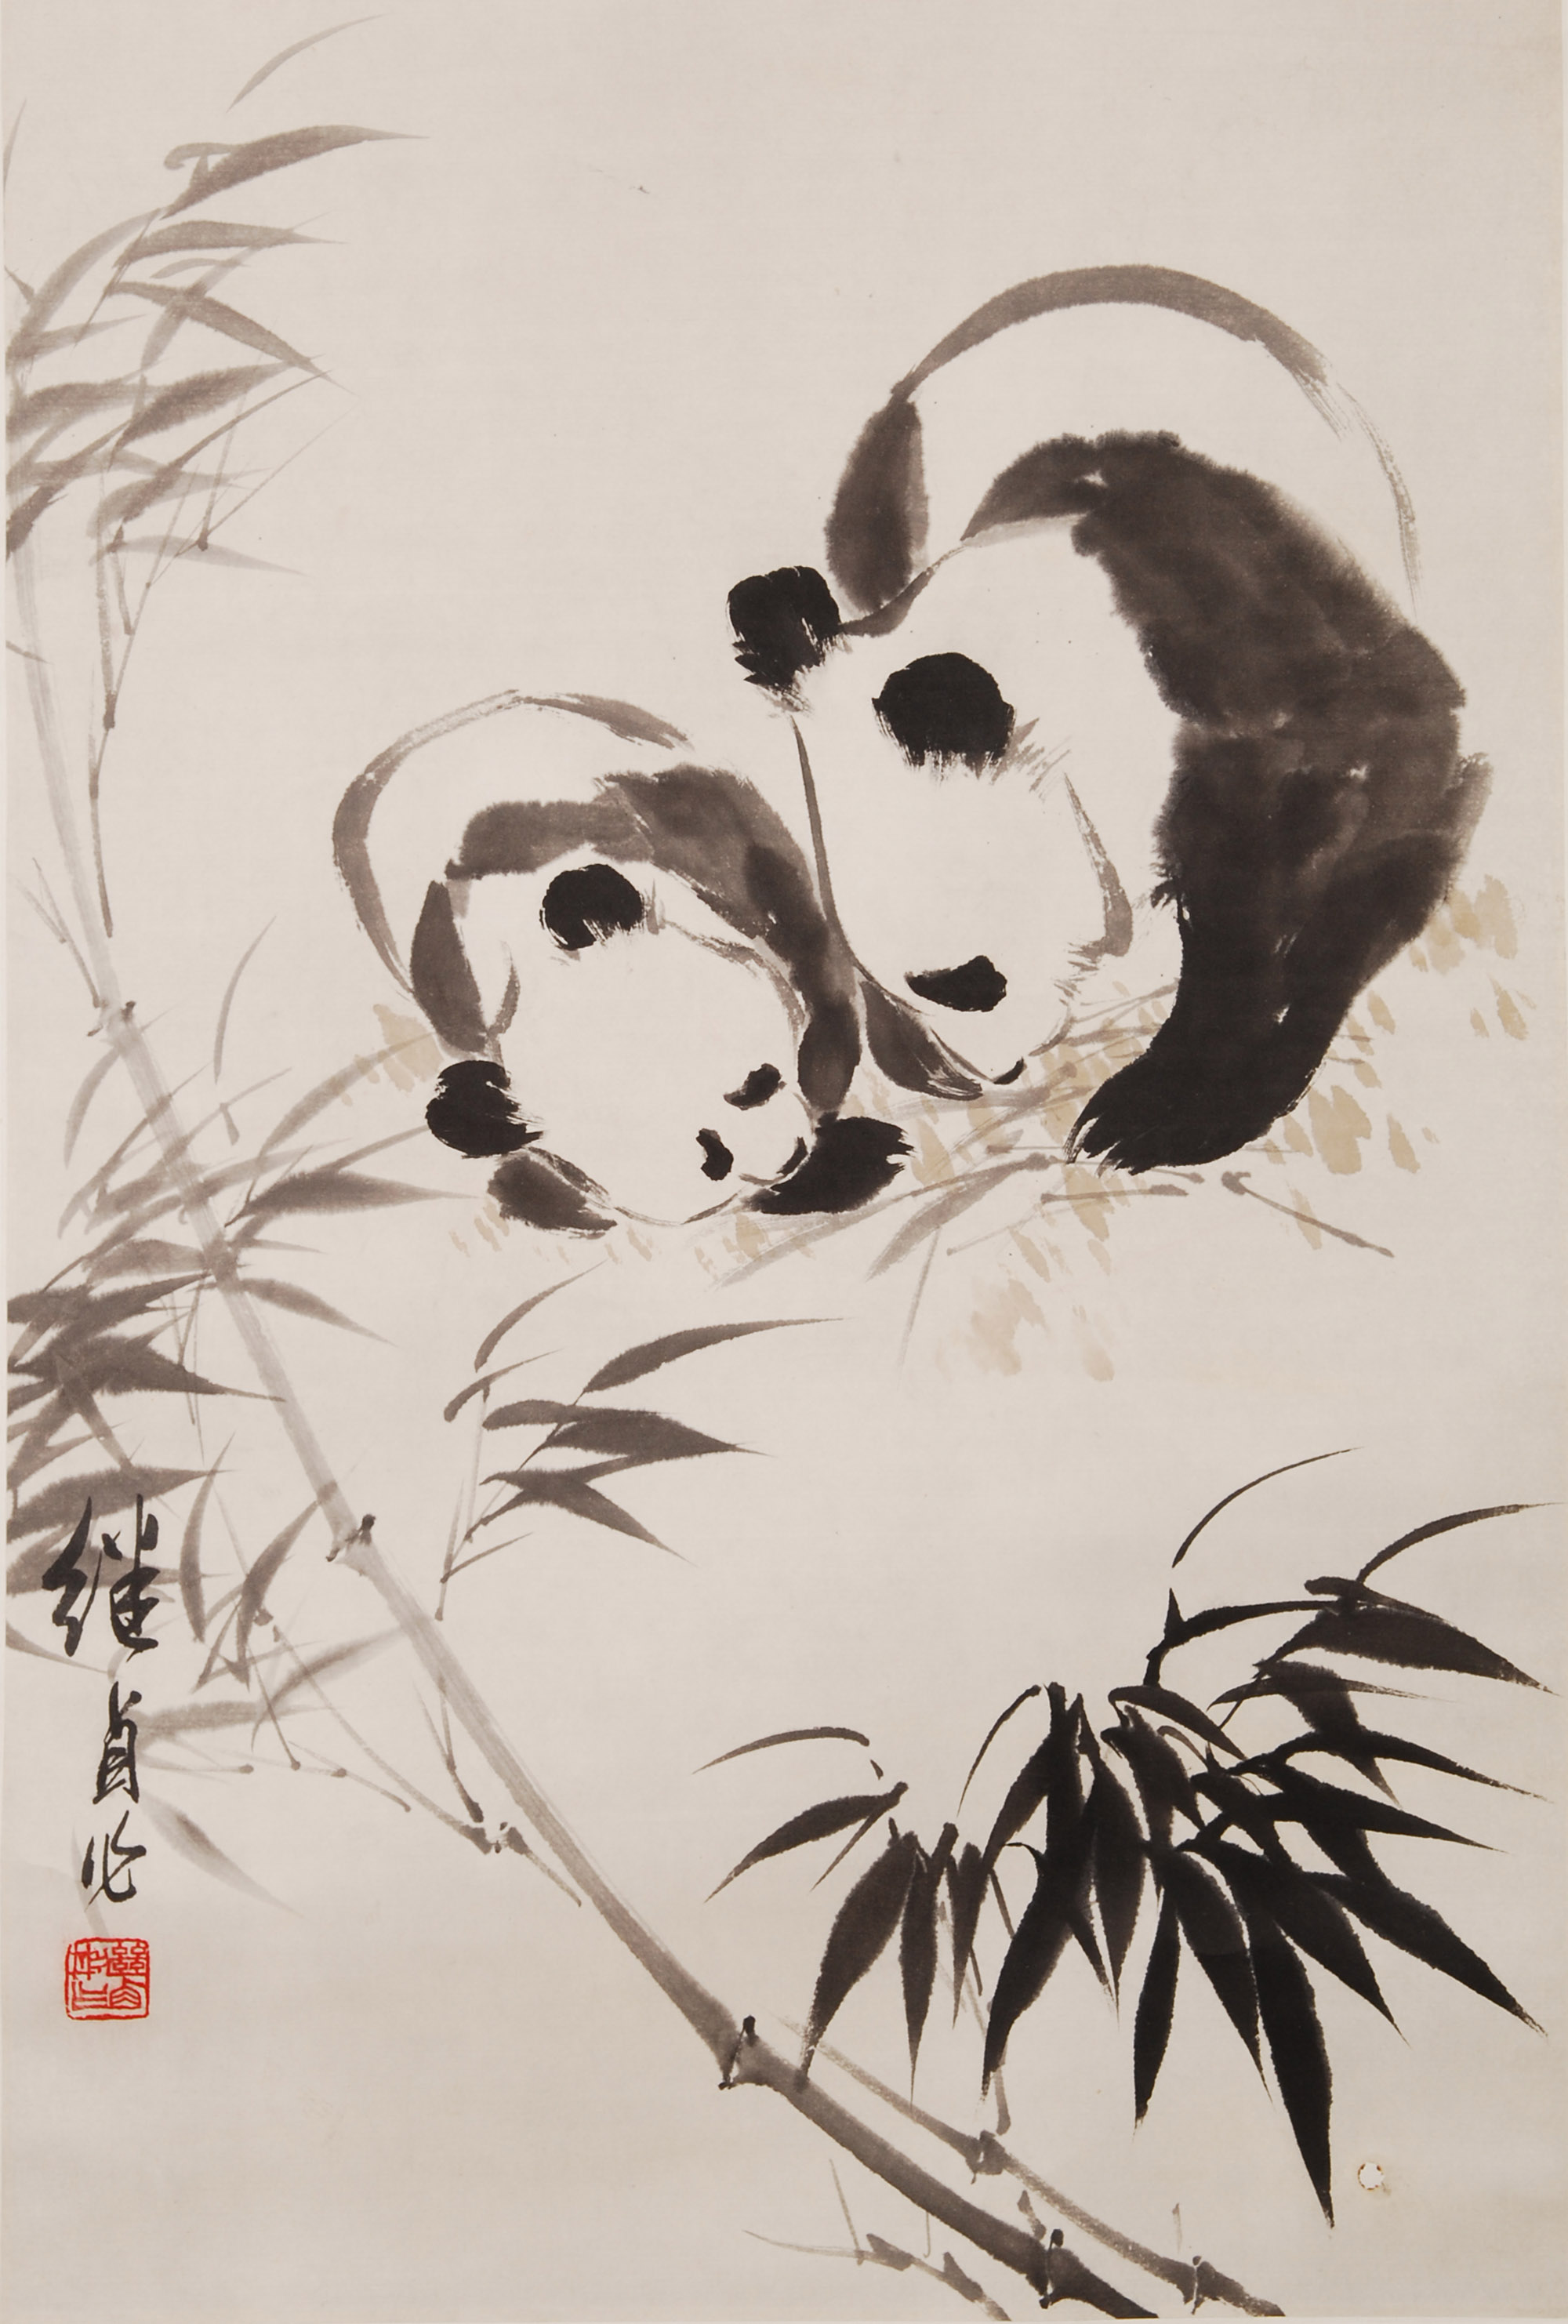 大熊猫的资料中国画图片